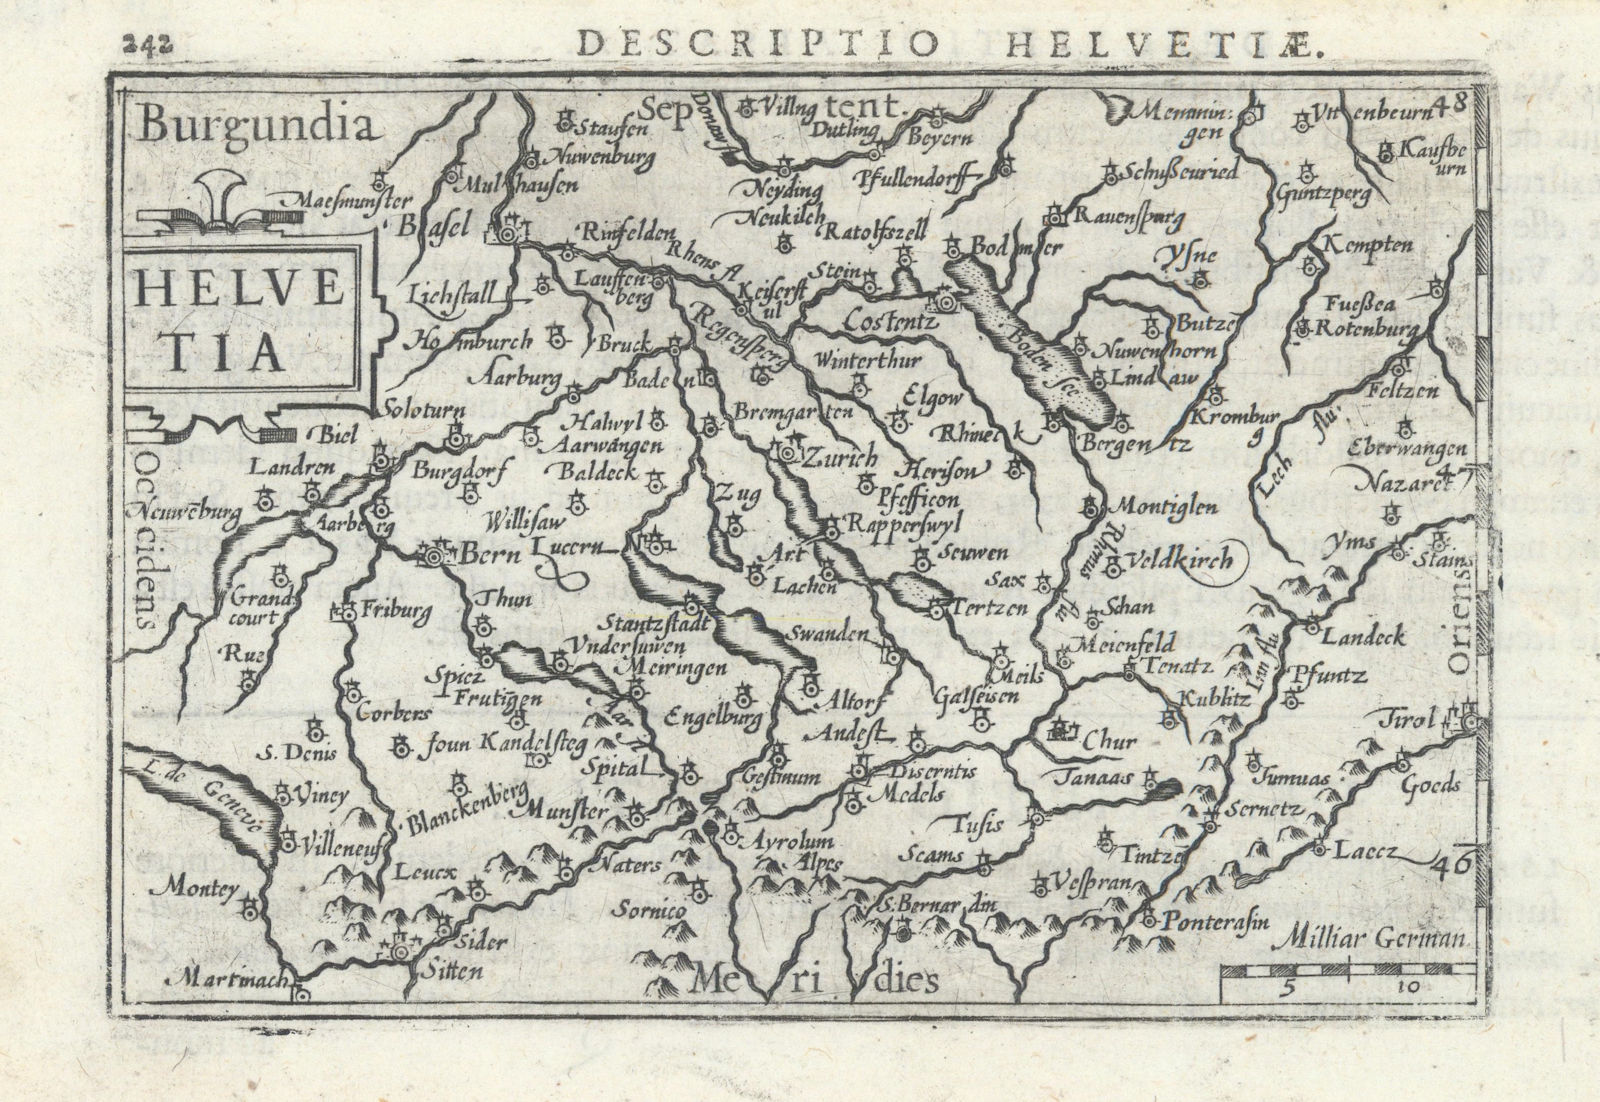 Helvetiae / Helvetia by Bertius / Langenes. Switzerland Suisse Schweiz 1603 map